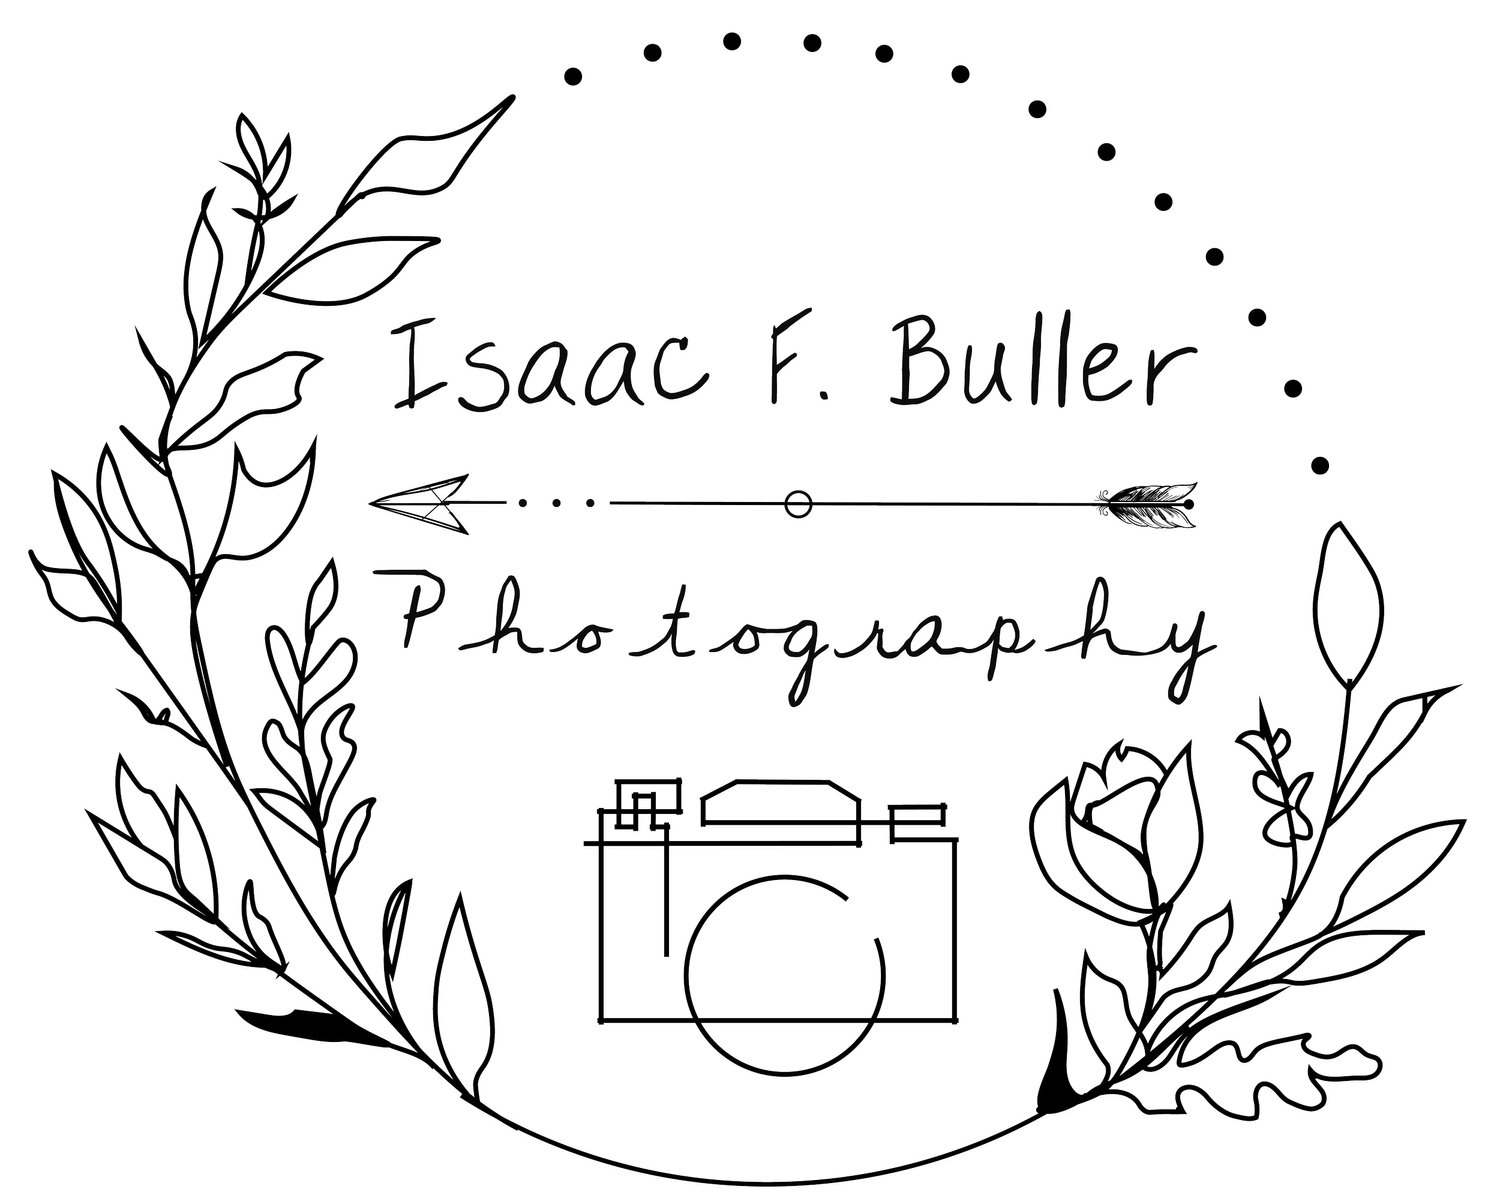 Isaac F. Buller Photography- Oklahoma City Wedding Photographer